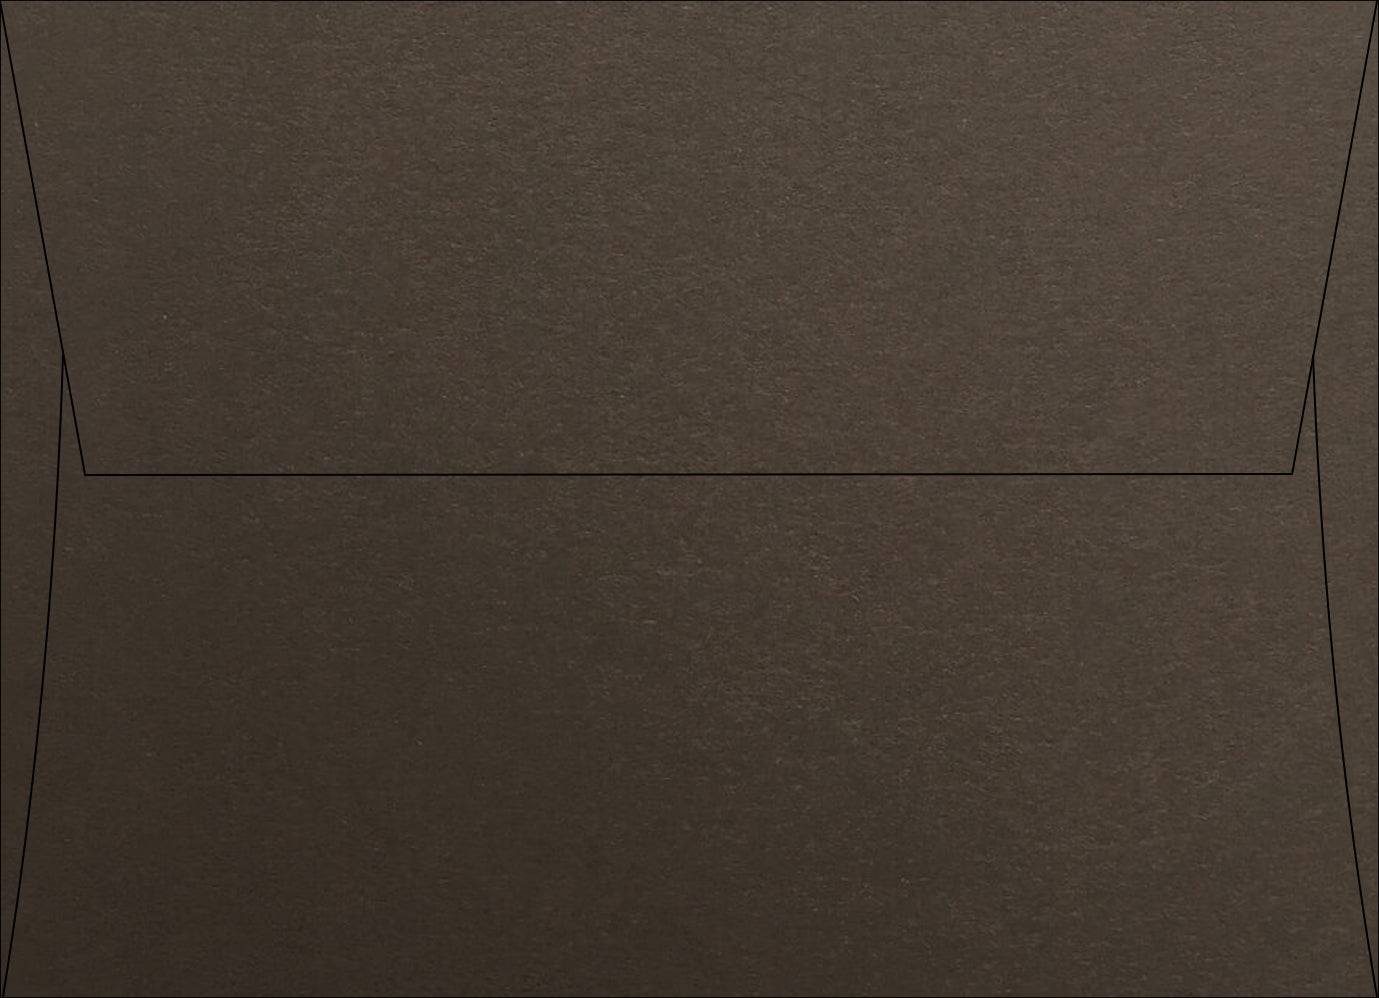 Speckletone Envelope Samples